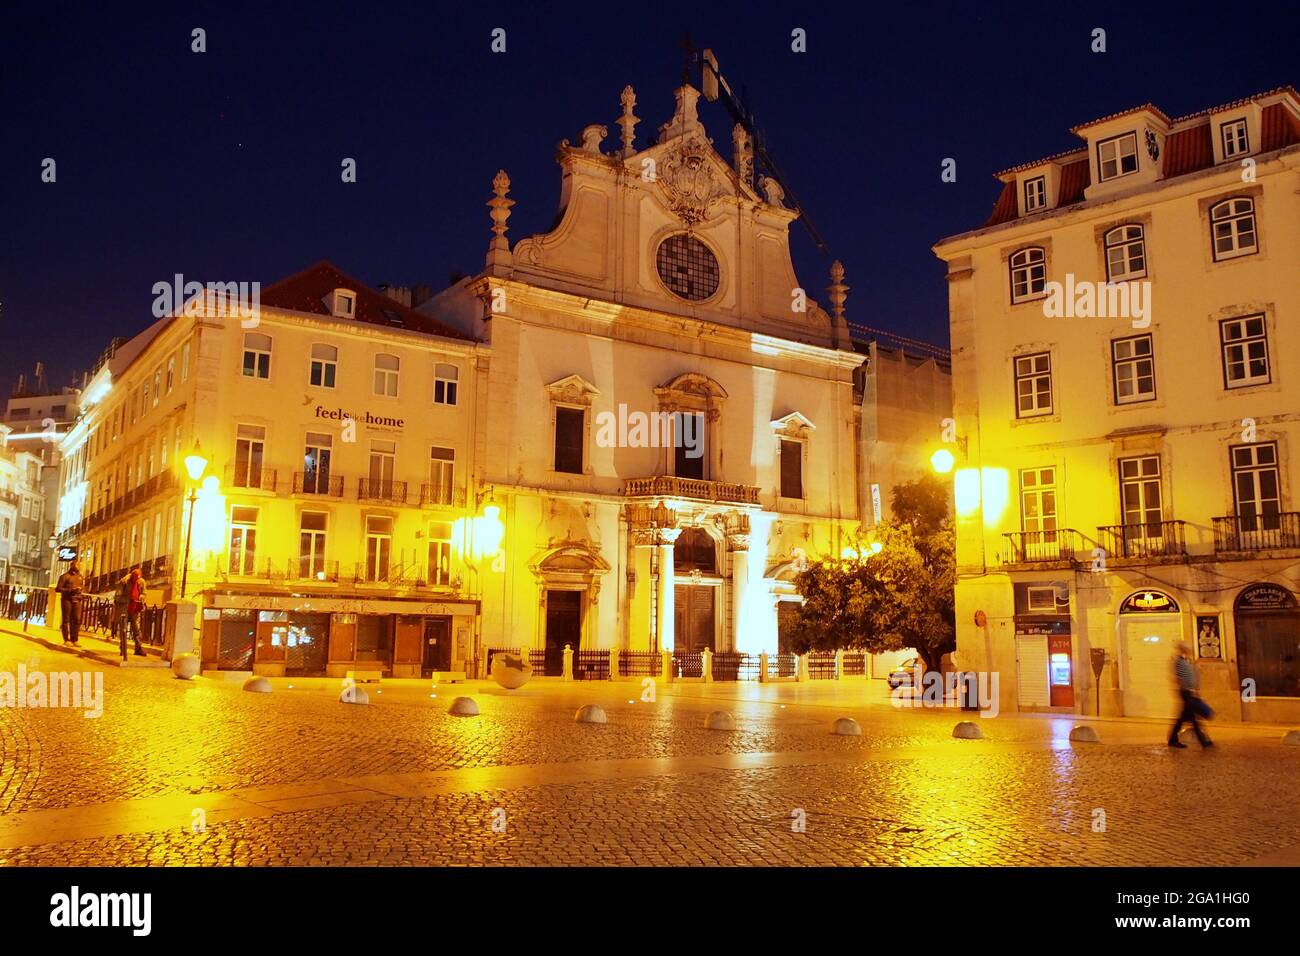 Kirche St. Dominic, beleuchtet bei Nacht, einer der ältesten in Lissabon, nach dem Erdbeben von 1755 vollständig im barocken Stil wiederaufgebaut, Lissabon, Portugal Stockfoto